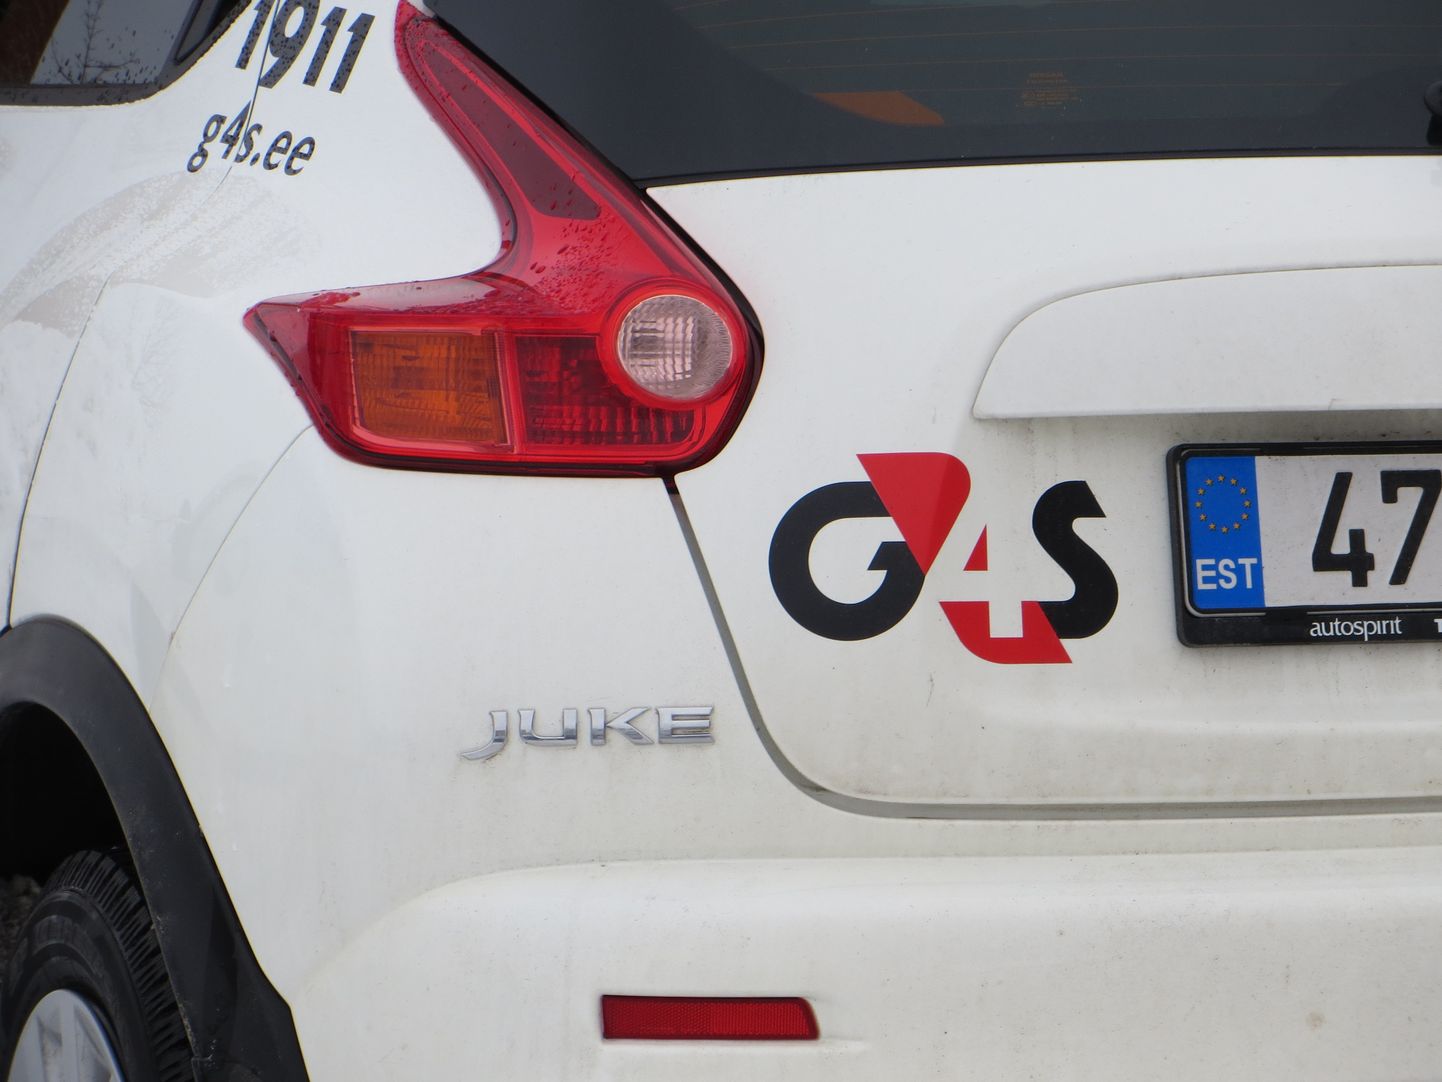 G4S turvafirma auto.